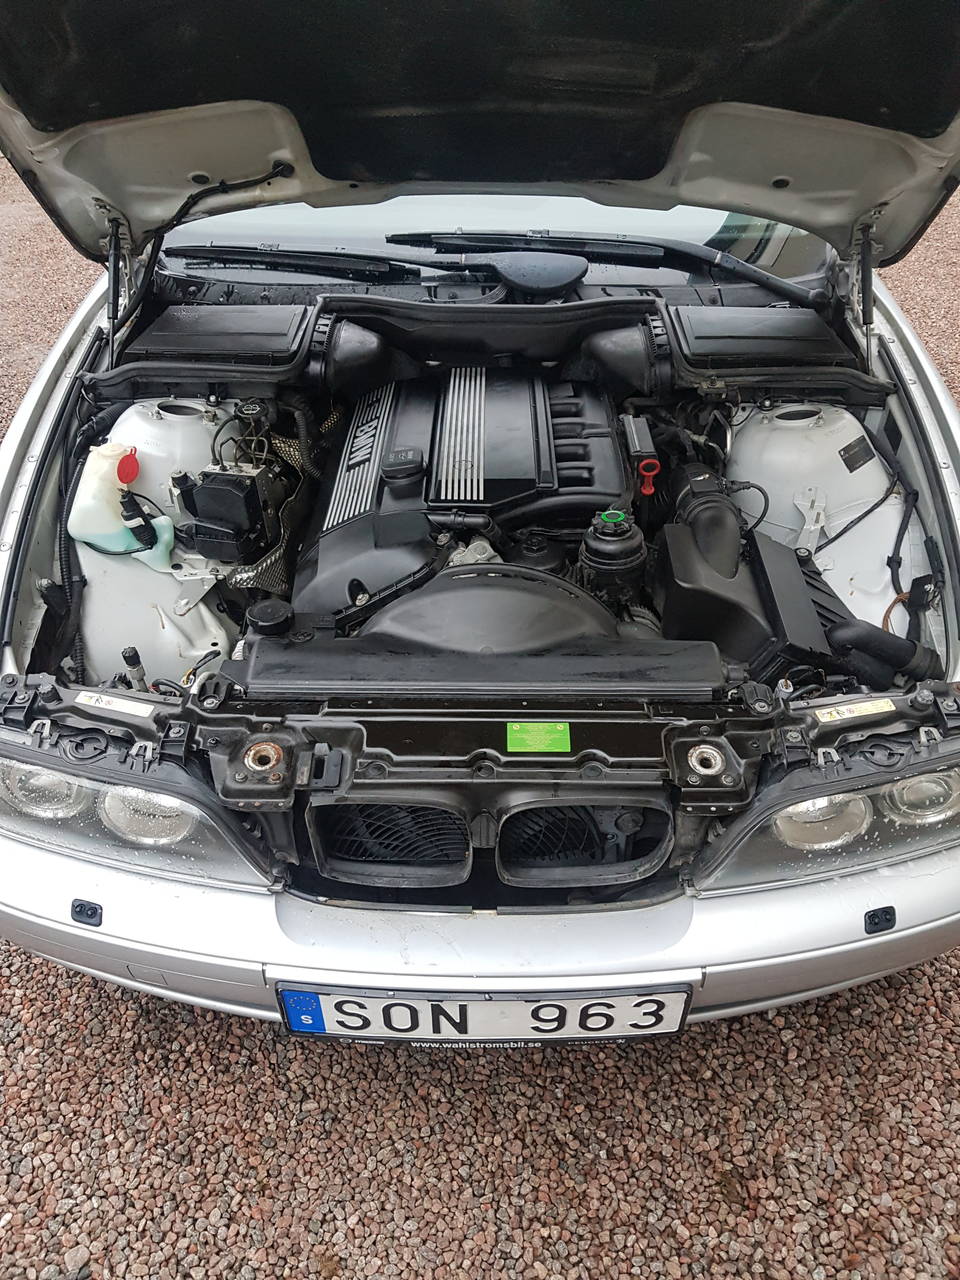 Bmw E39 520i-foton och fler bilder på BMW - BMW, Bilinteriör